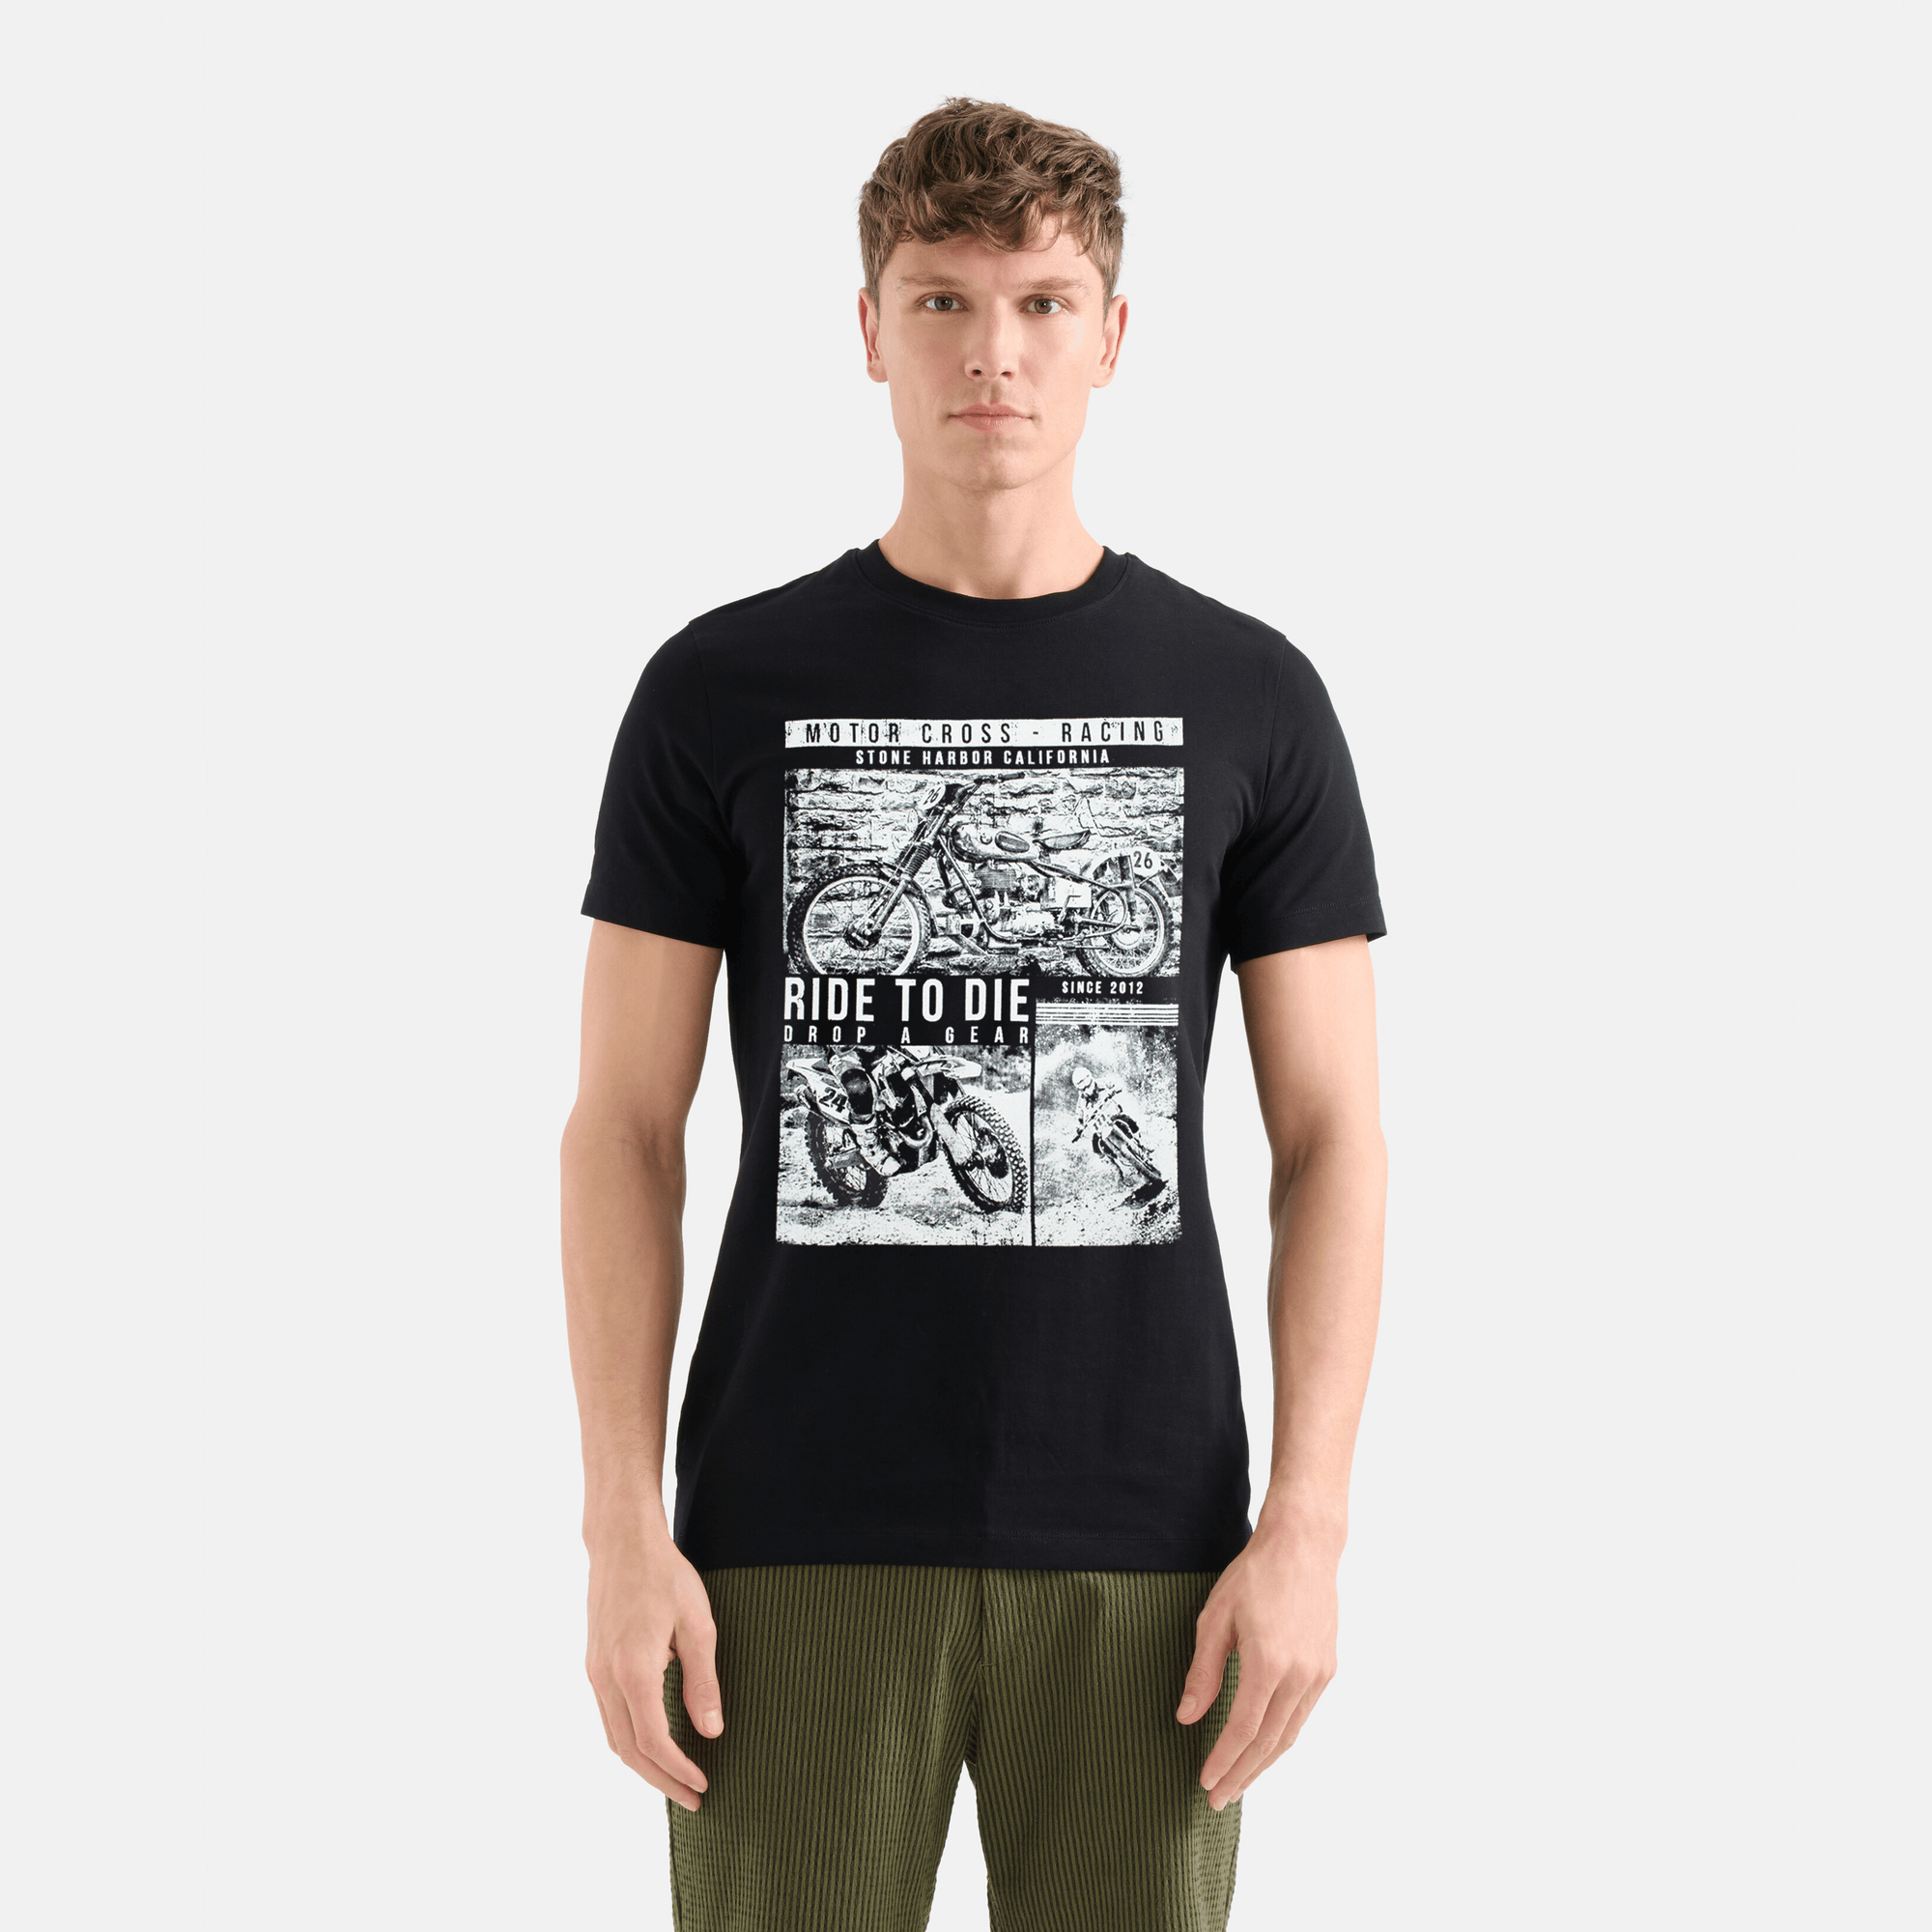 Stone Harbor Men's T-Shirt MEN'S PREMIUM JET BLACK T-SHIRT